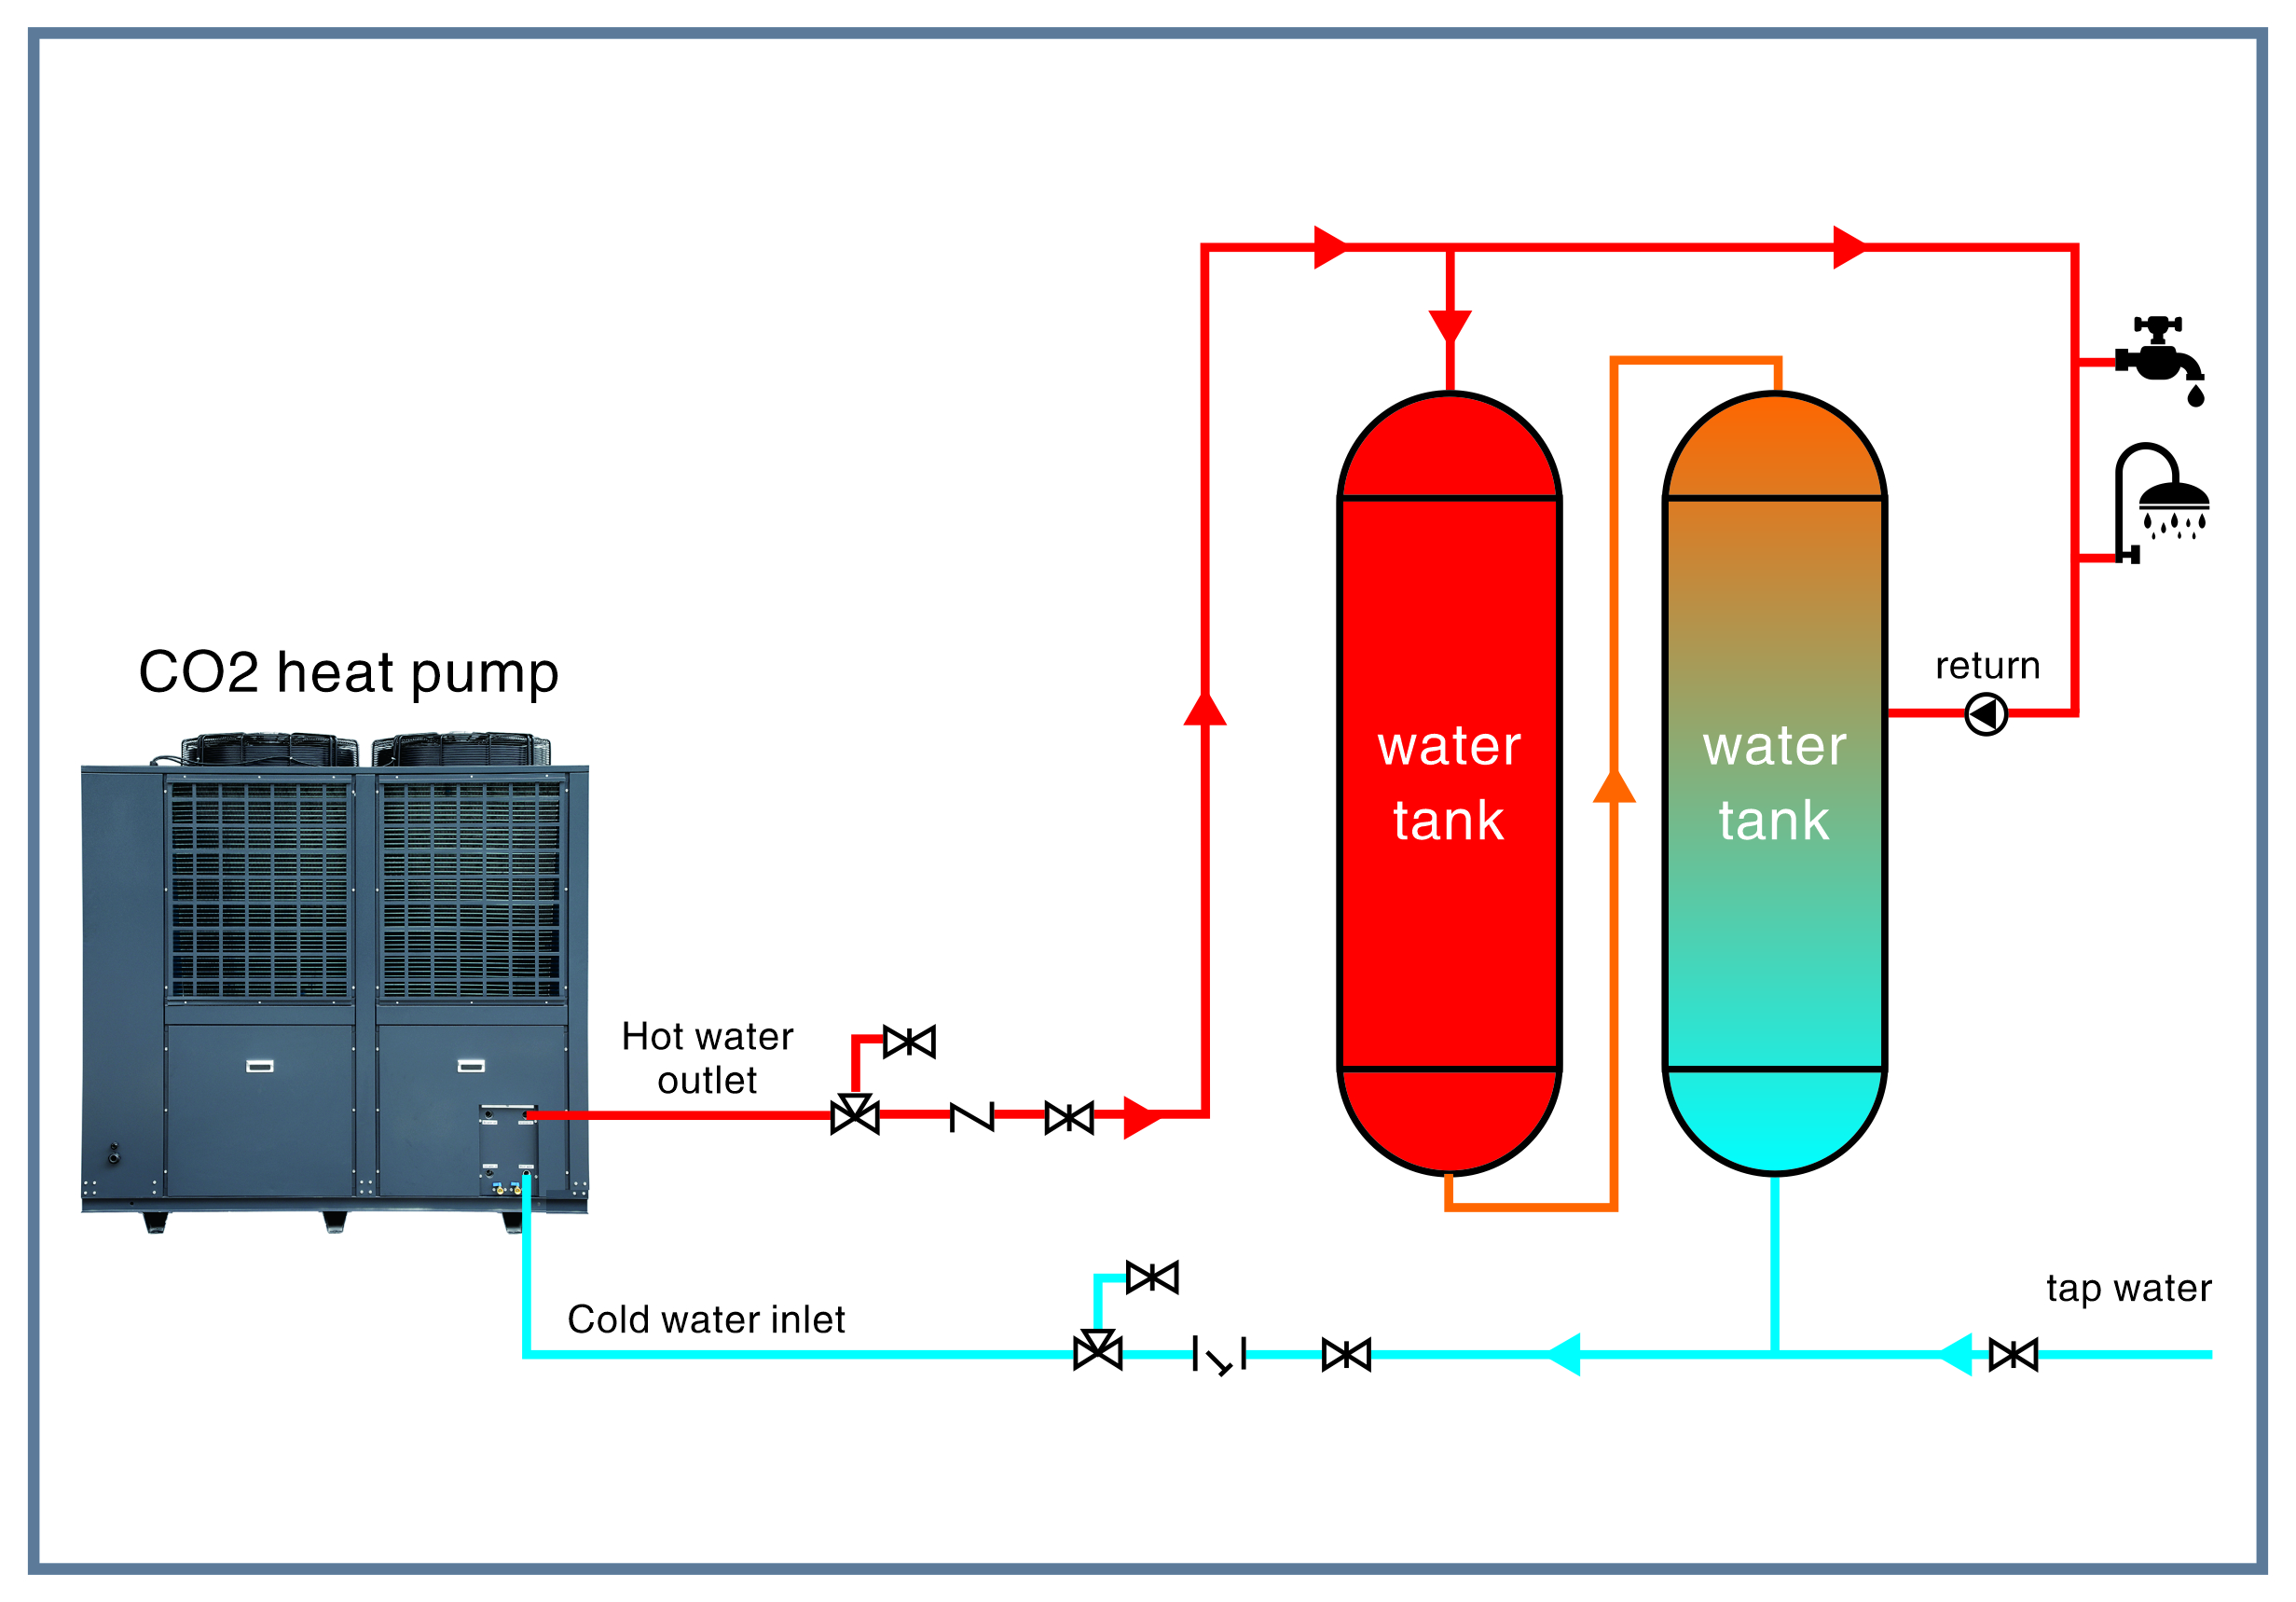 Bomba de calor de CO2 aire-agua para calentador de agua